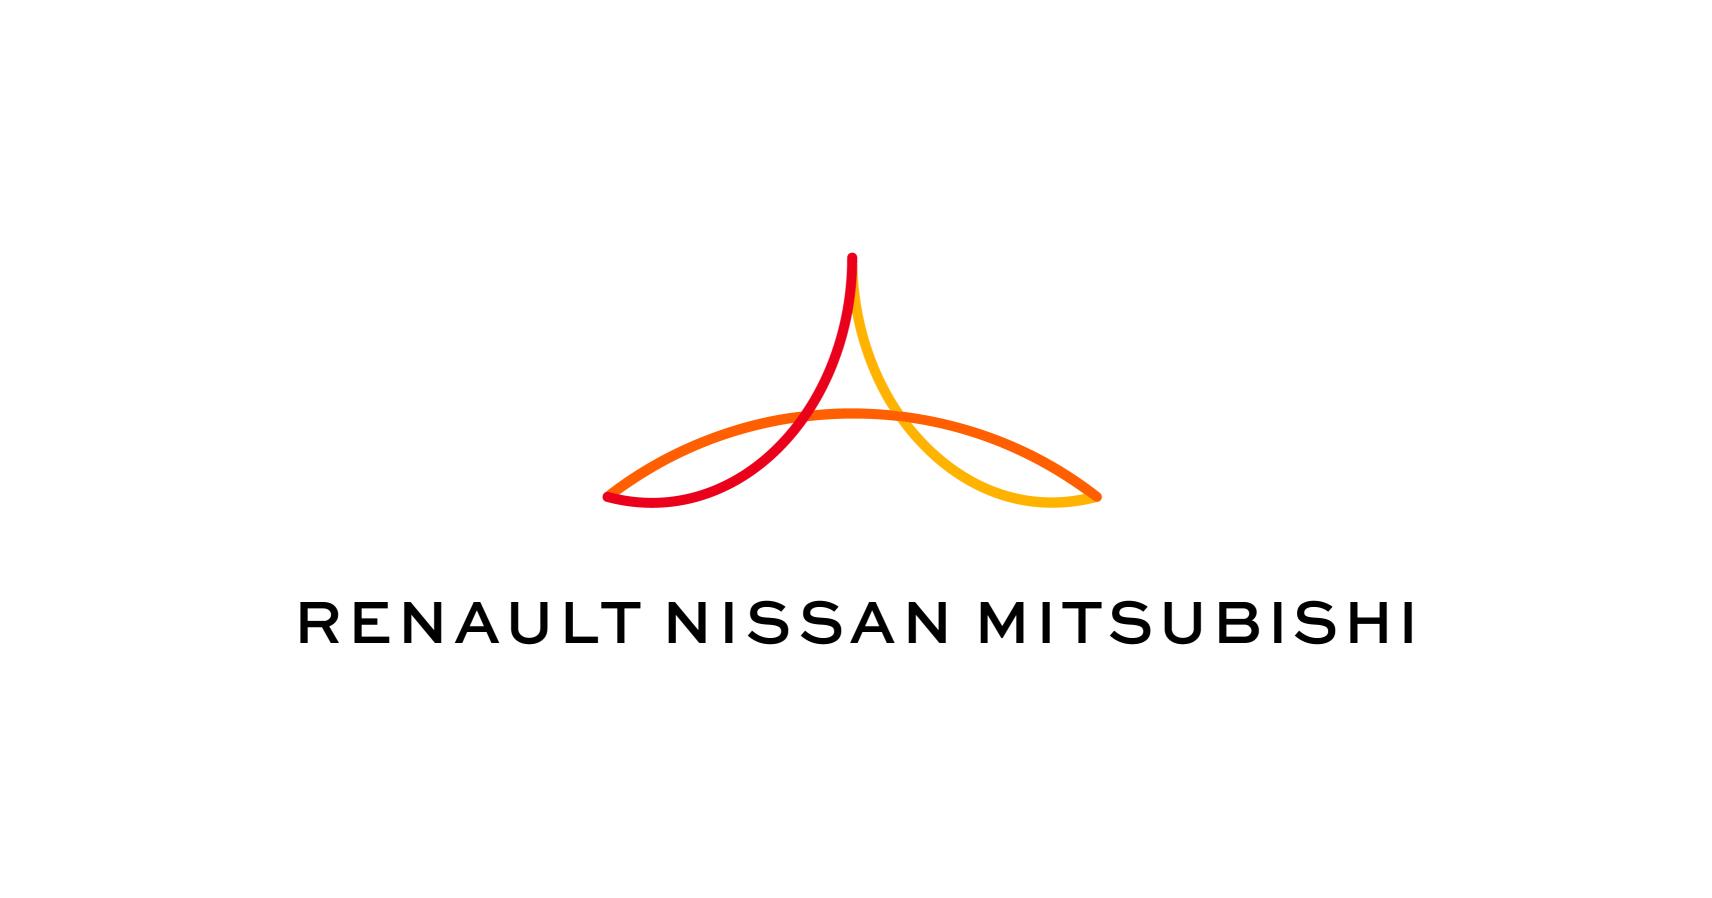 Renault-Nissan-Mitsubishi y Google han firmado un acuerdo de colaboración tecnológica